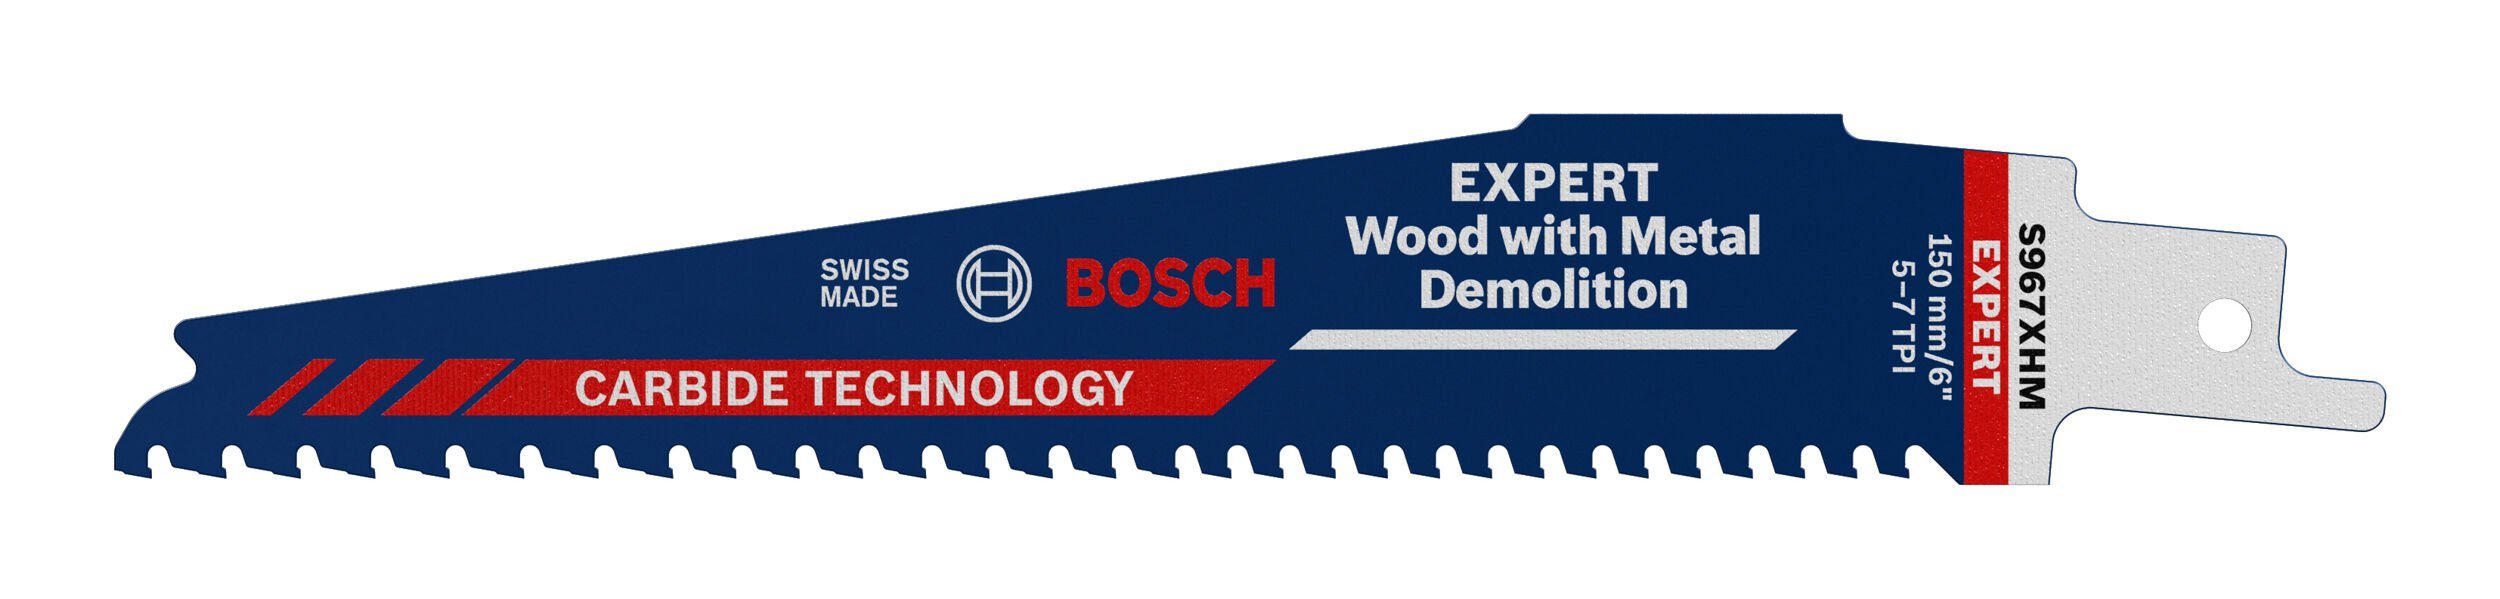 XHM Demolition, S 967 for Wood Demolition with Expert Endurance and Metal Expert Wood Säbelsägeblatt BOSCH Metal